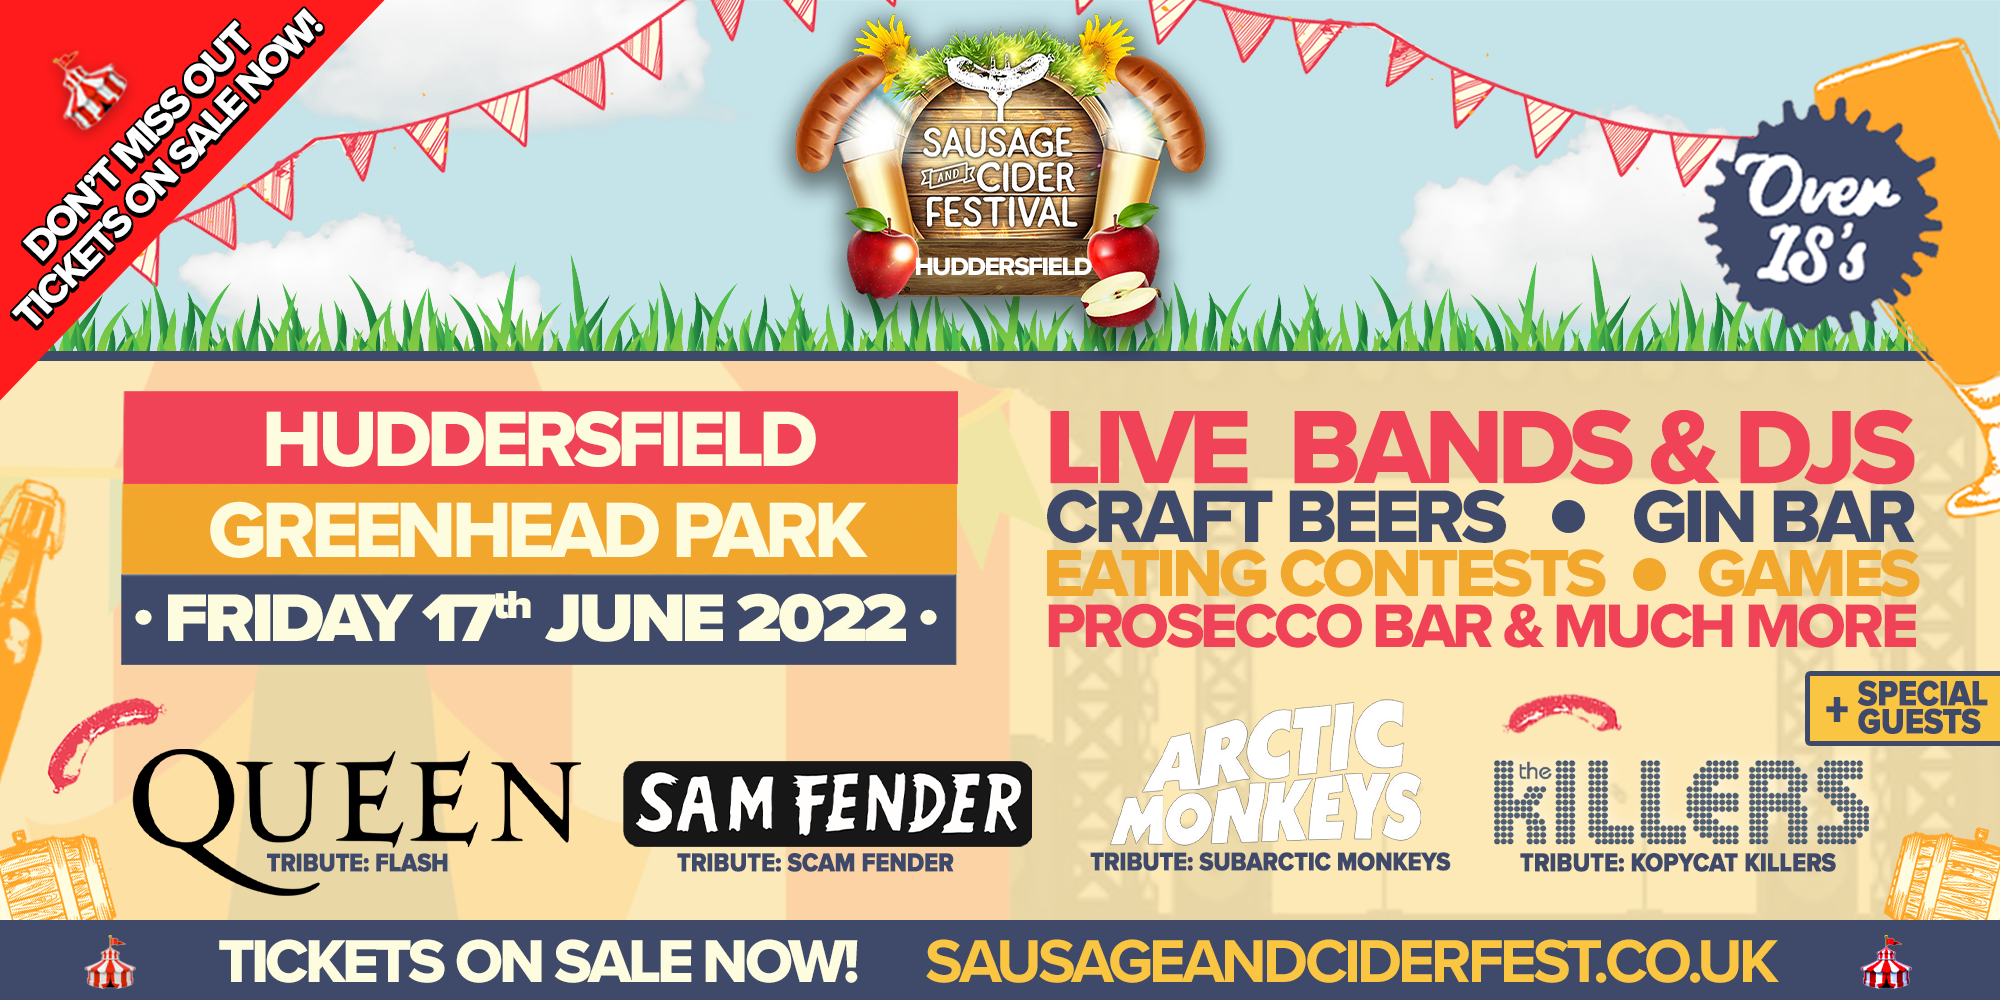 Sausage & Cider Fest - Huddersfield 2022